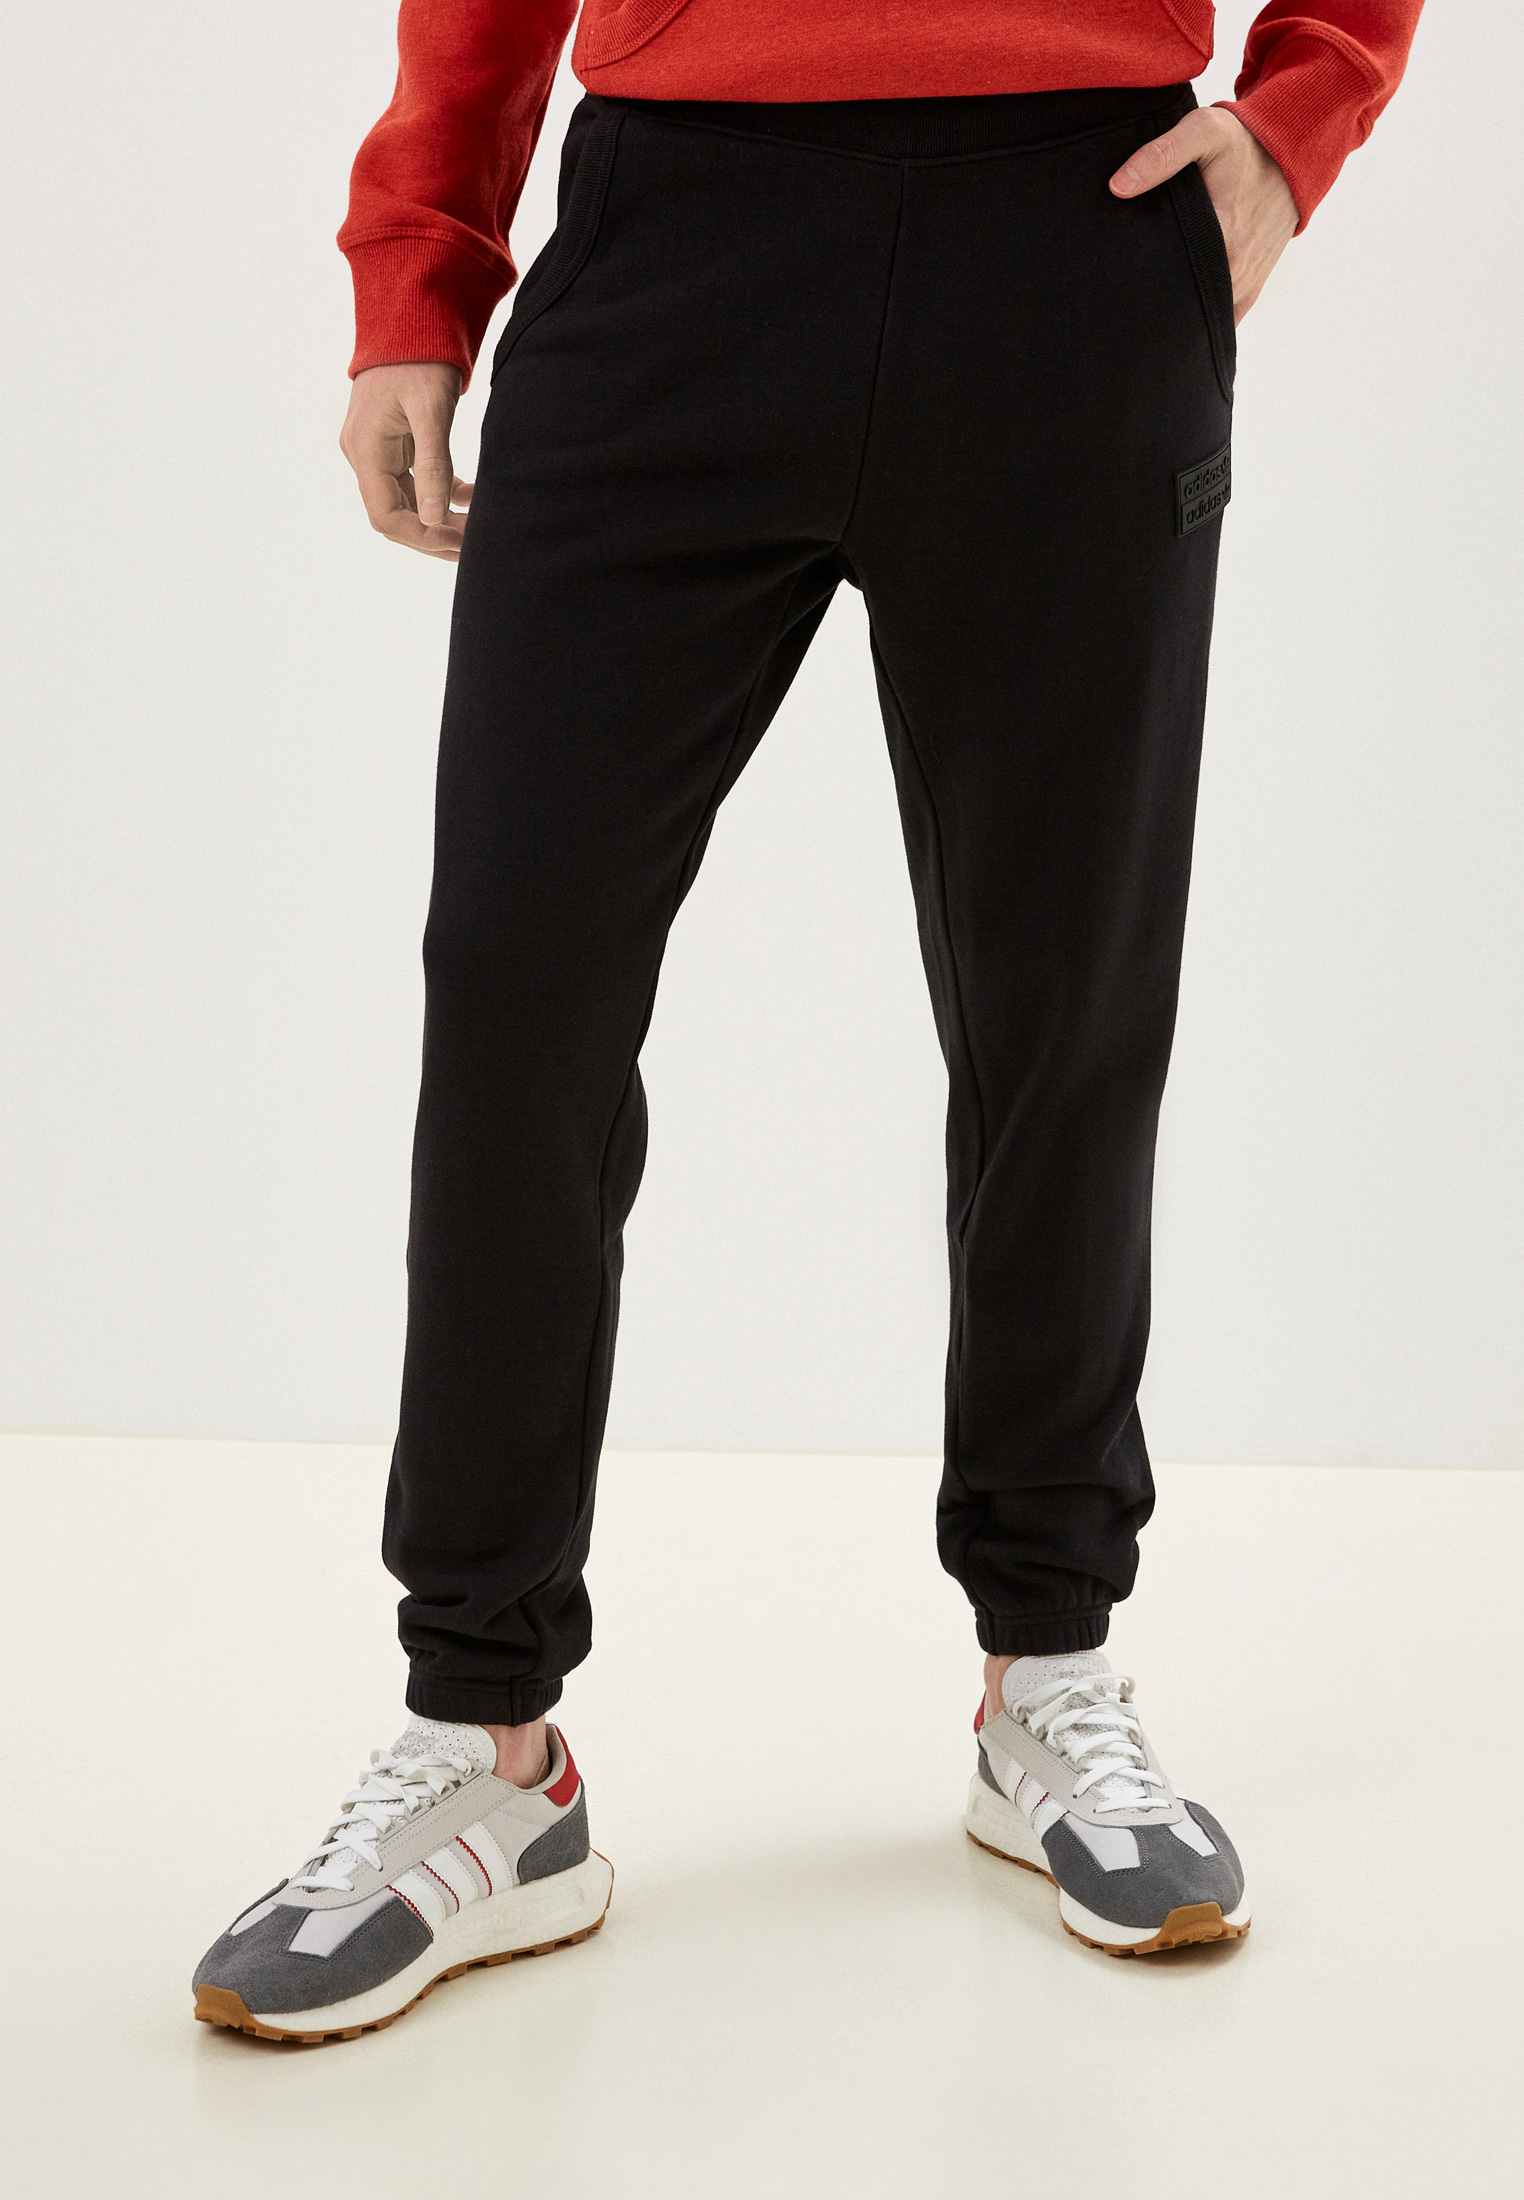 Мужские спортивные брюки Adidas Originals (Адидас Ориджиналс) GN3304: изображение 5